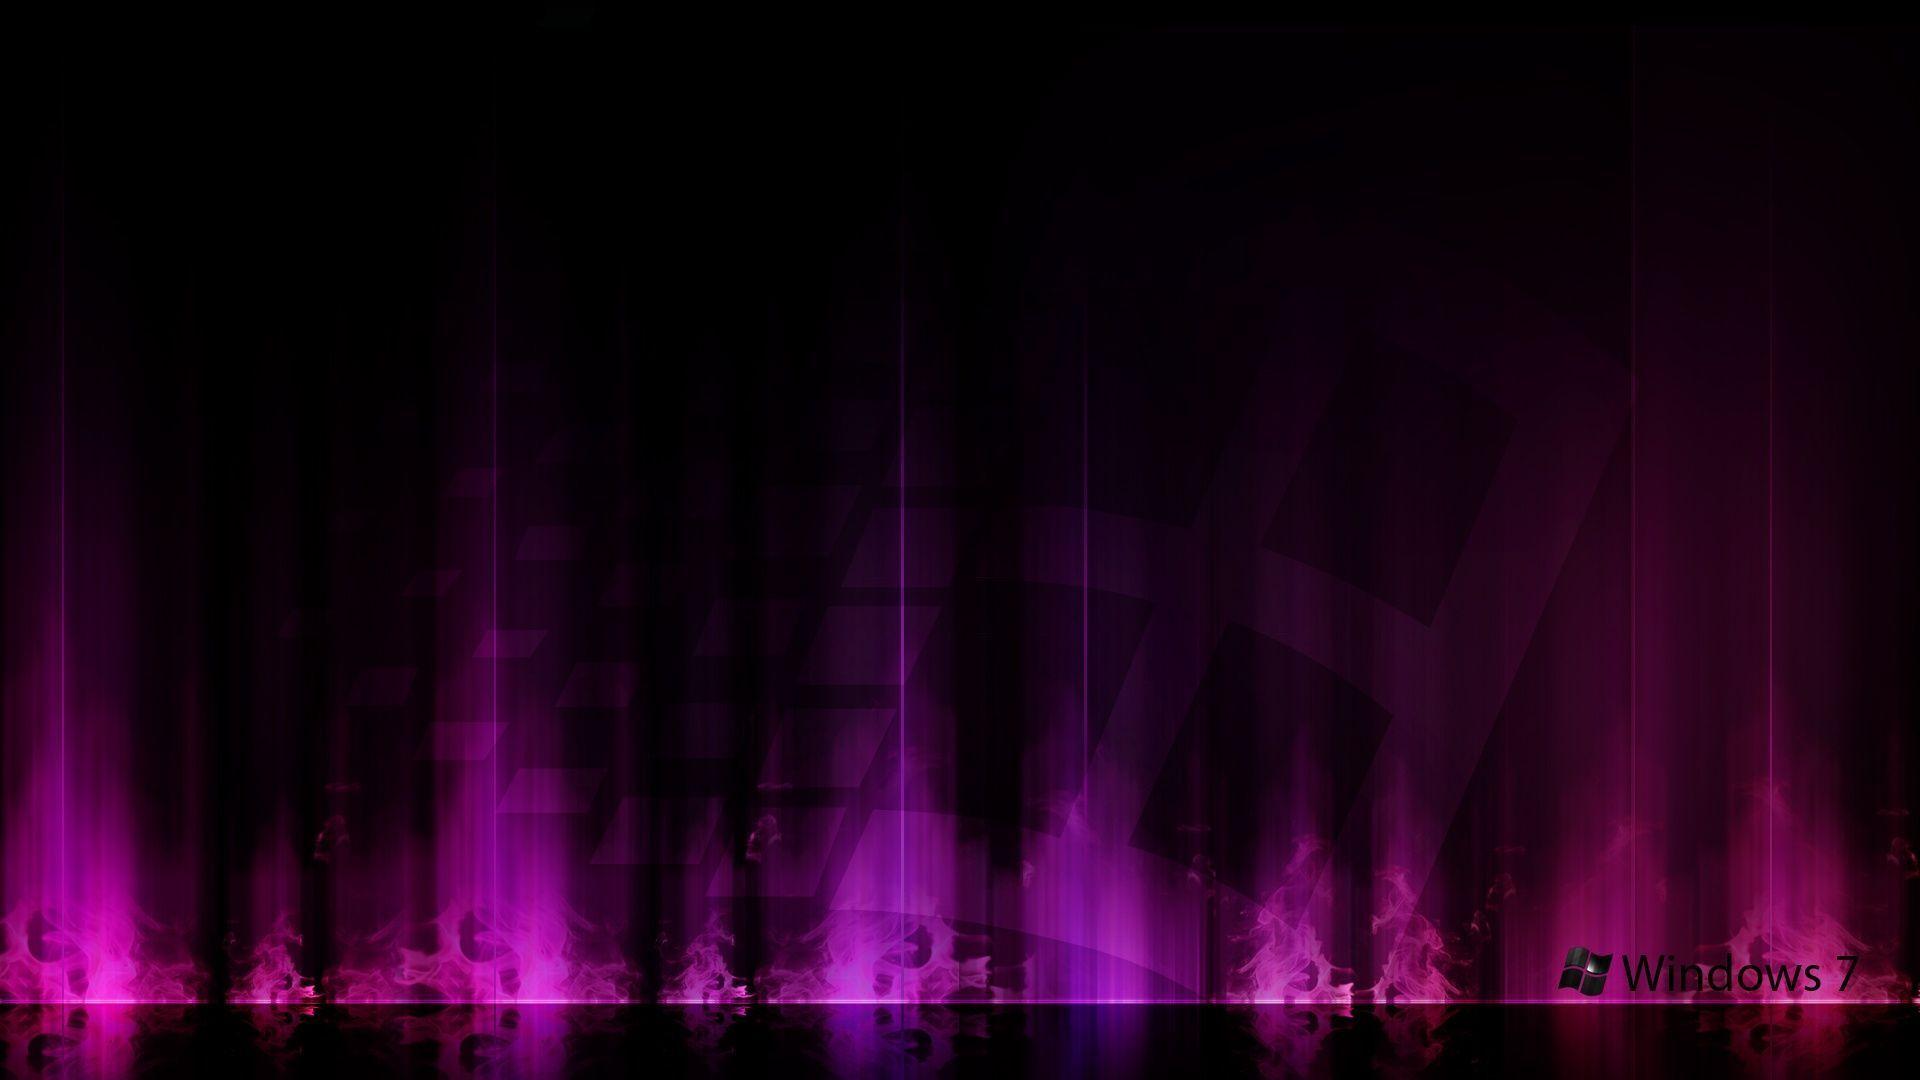 Windows 7 Purple Aurora Wallpaper